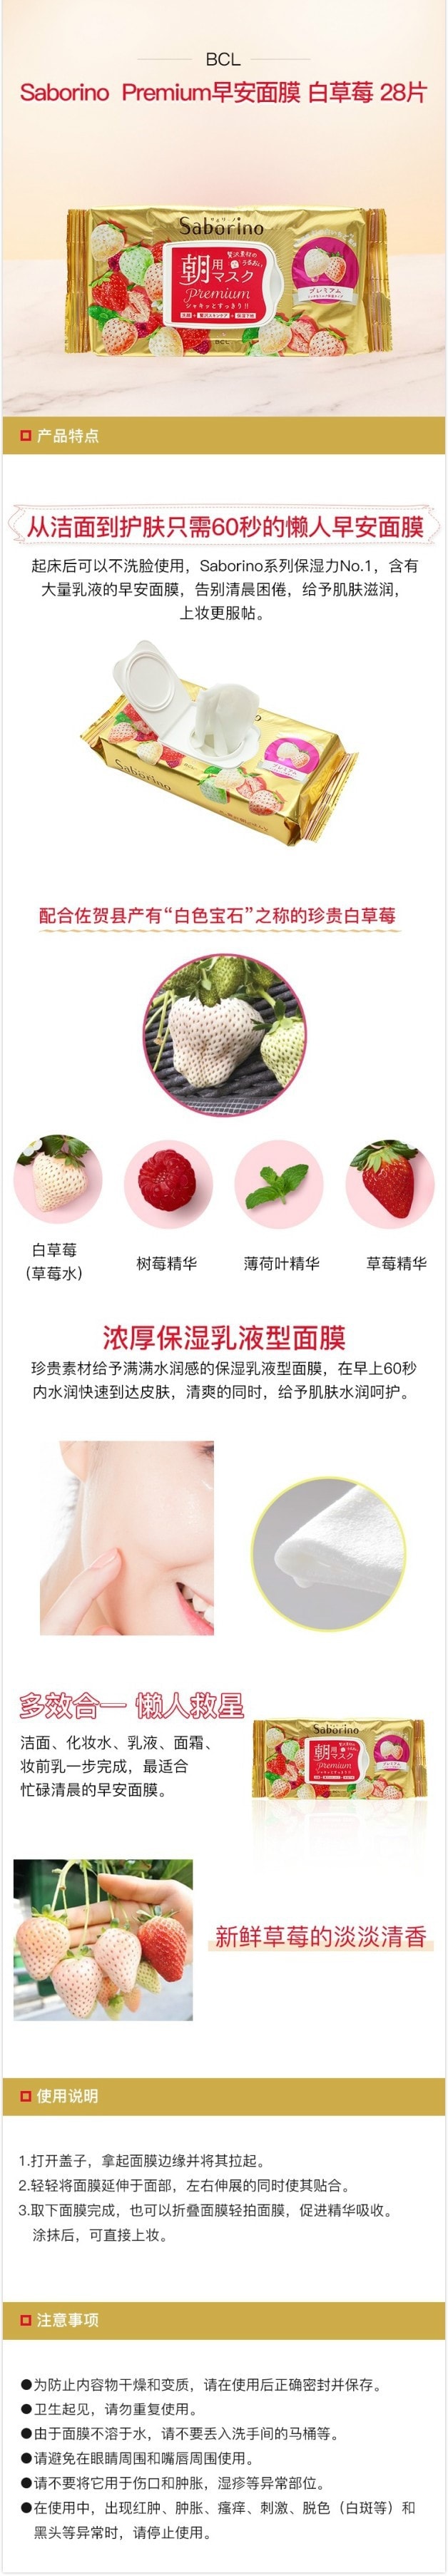 日本BCL SABORINO 早安面膜 白草莓限定款  28枚入